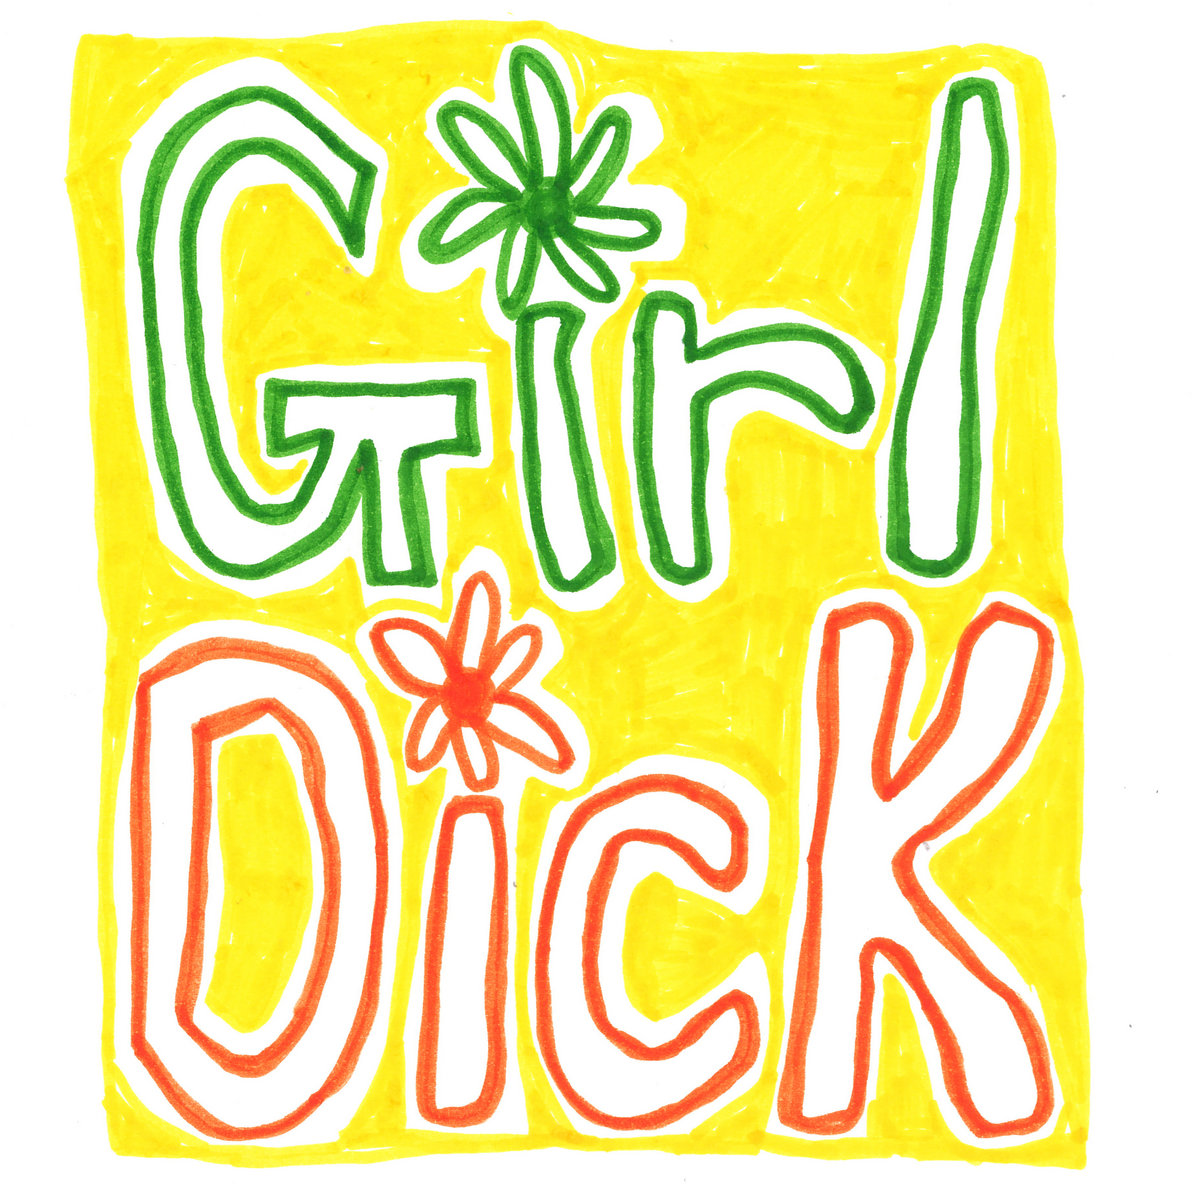 Girl Dick